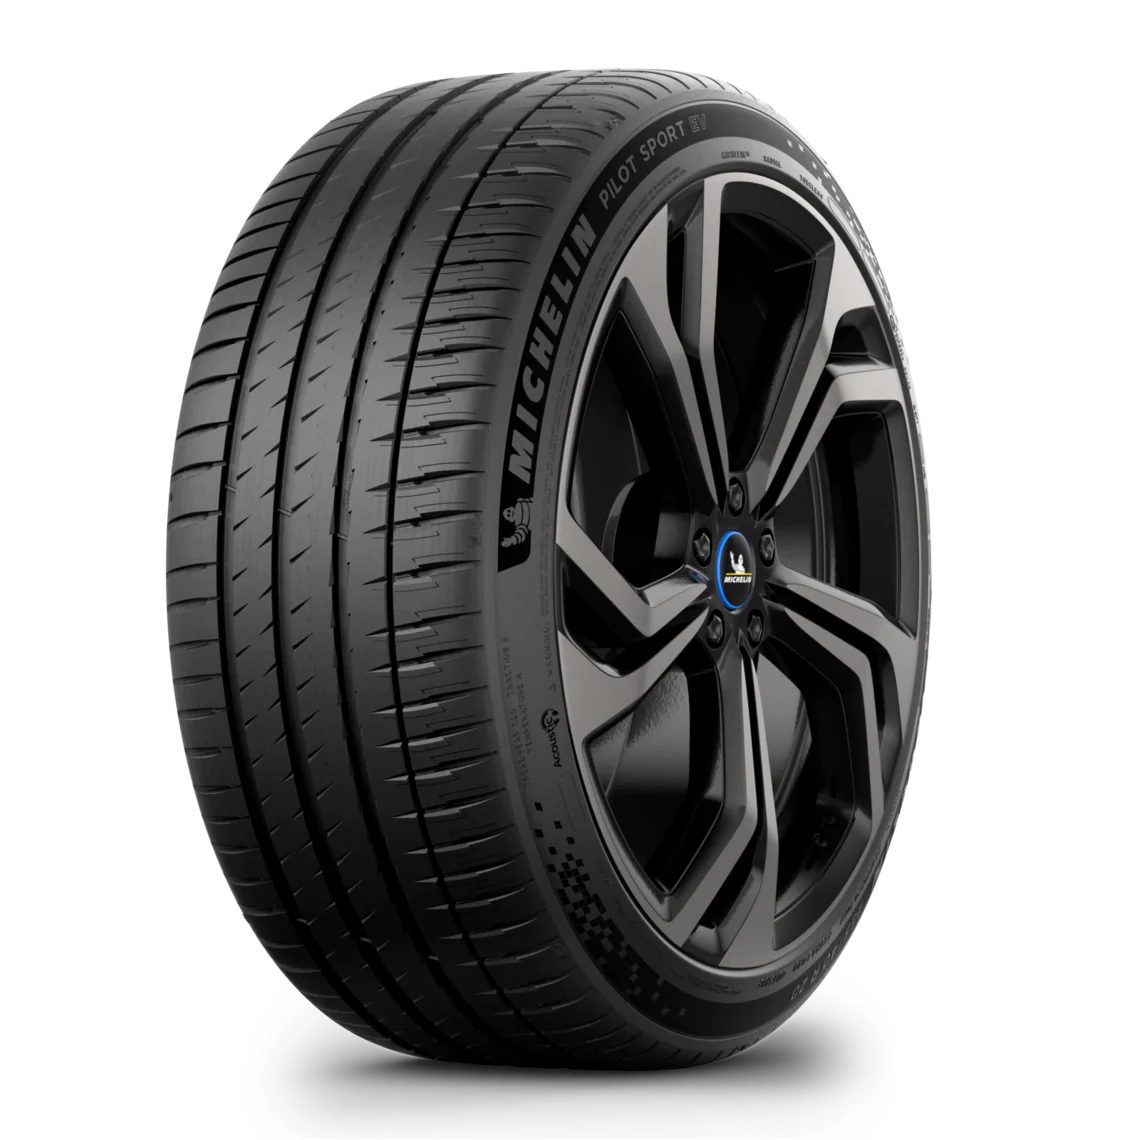 Michelin Michelin 255/40 R20 101W P. SPORT EV T0 XL pneumatici nuovi Estivo 